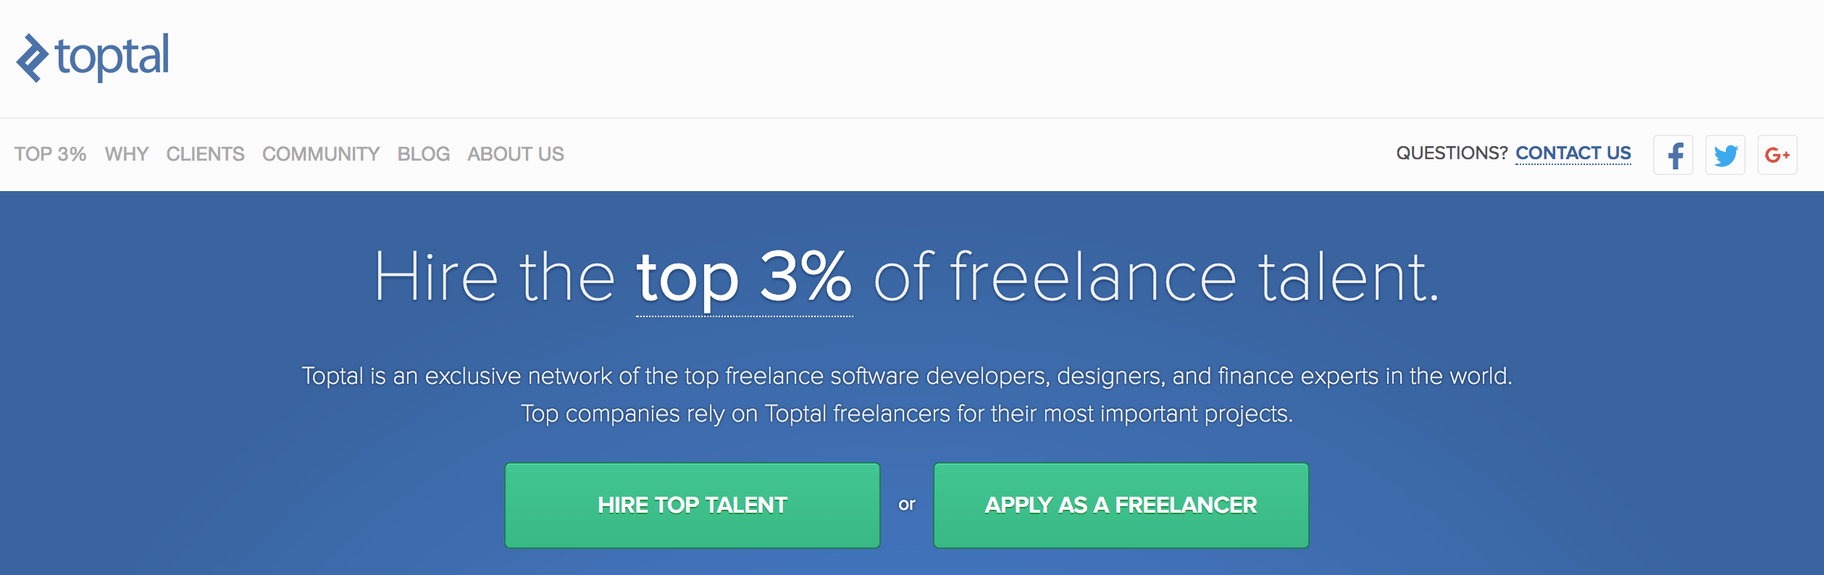 cómo encontrar freelancers - mejores sitios web freelance